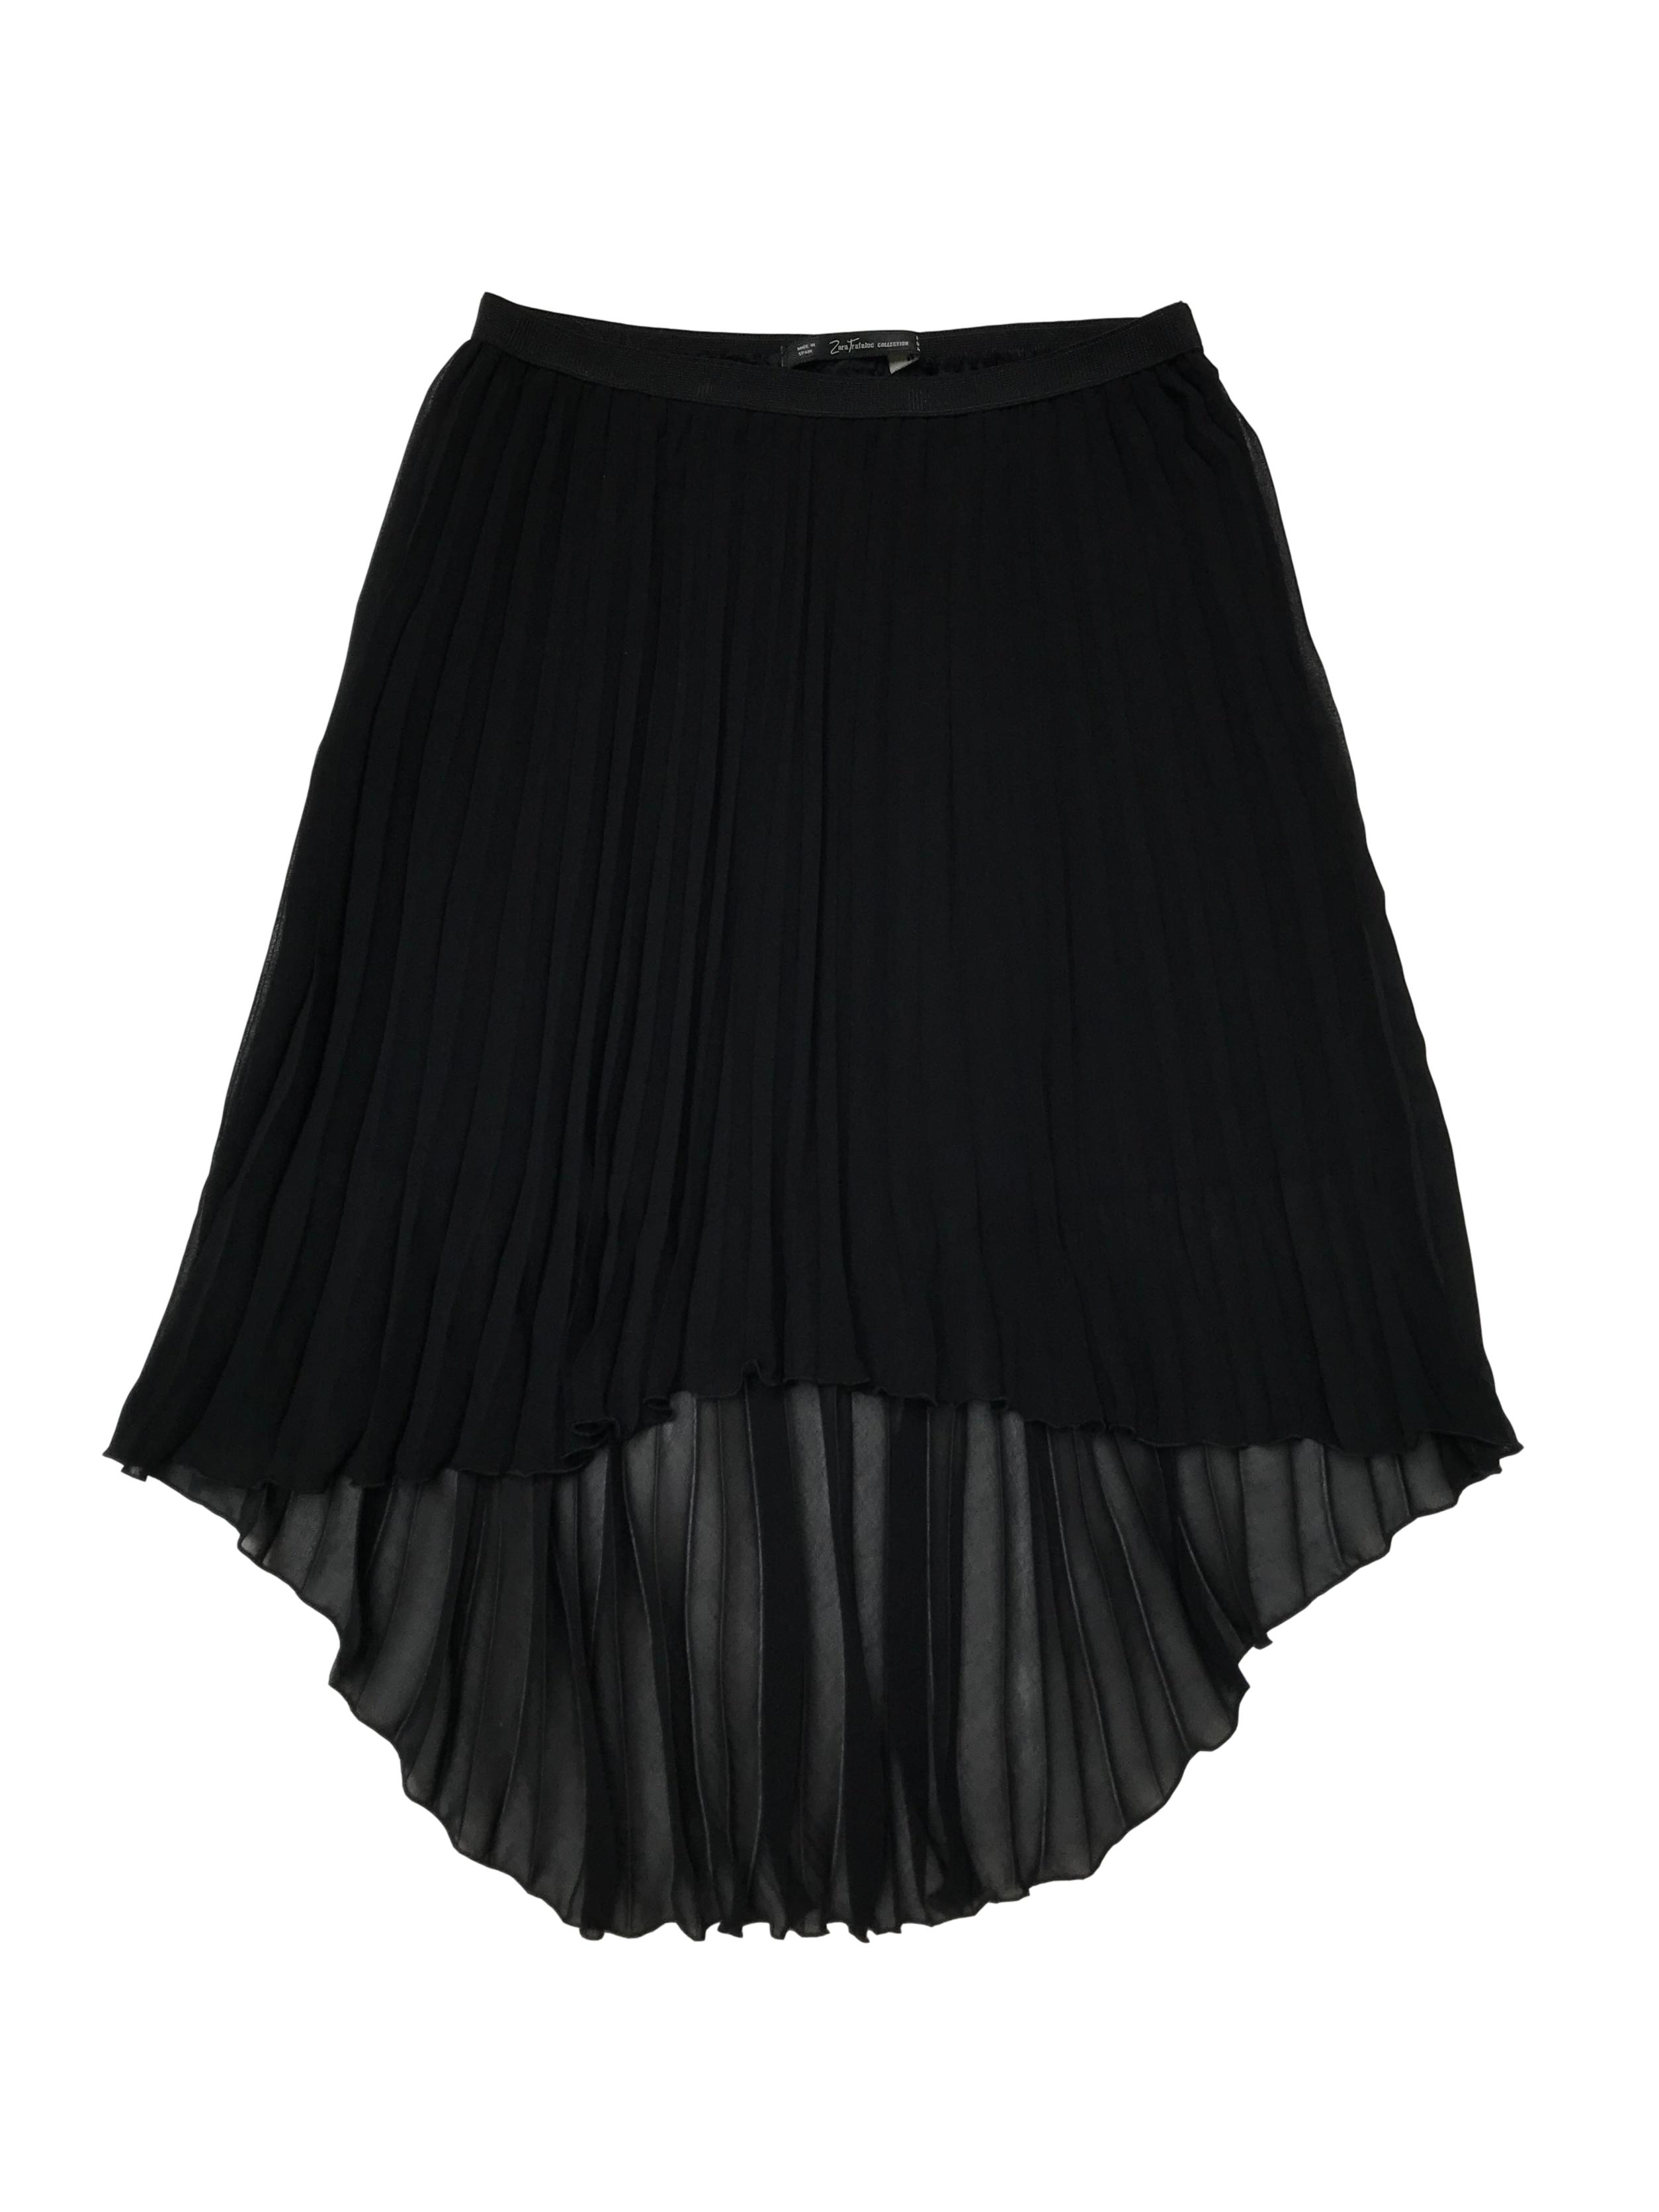 Falda asimétrica Zara negra plisada, tiene forro corto y pretina elástica. Largo 45 - 65cm. Precio original S/ 129